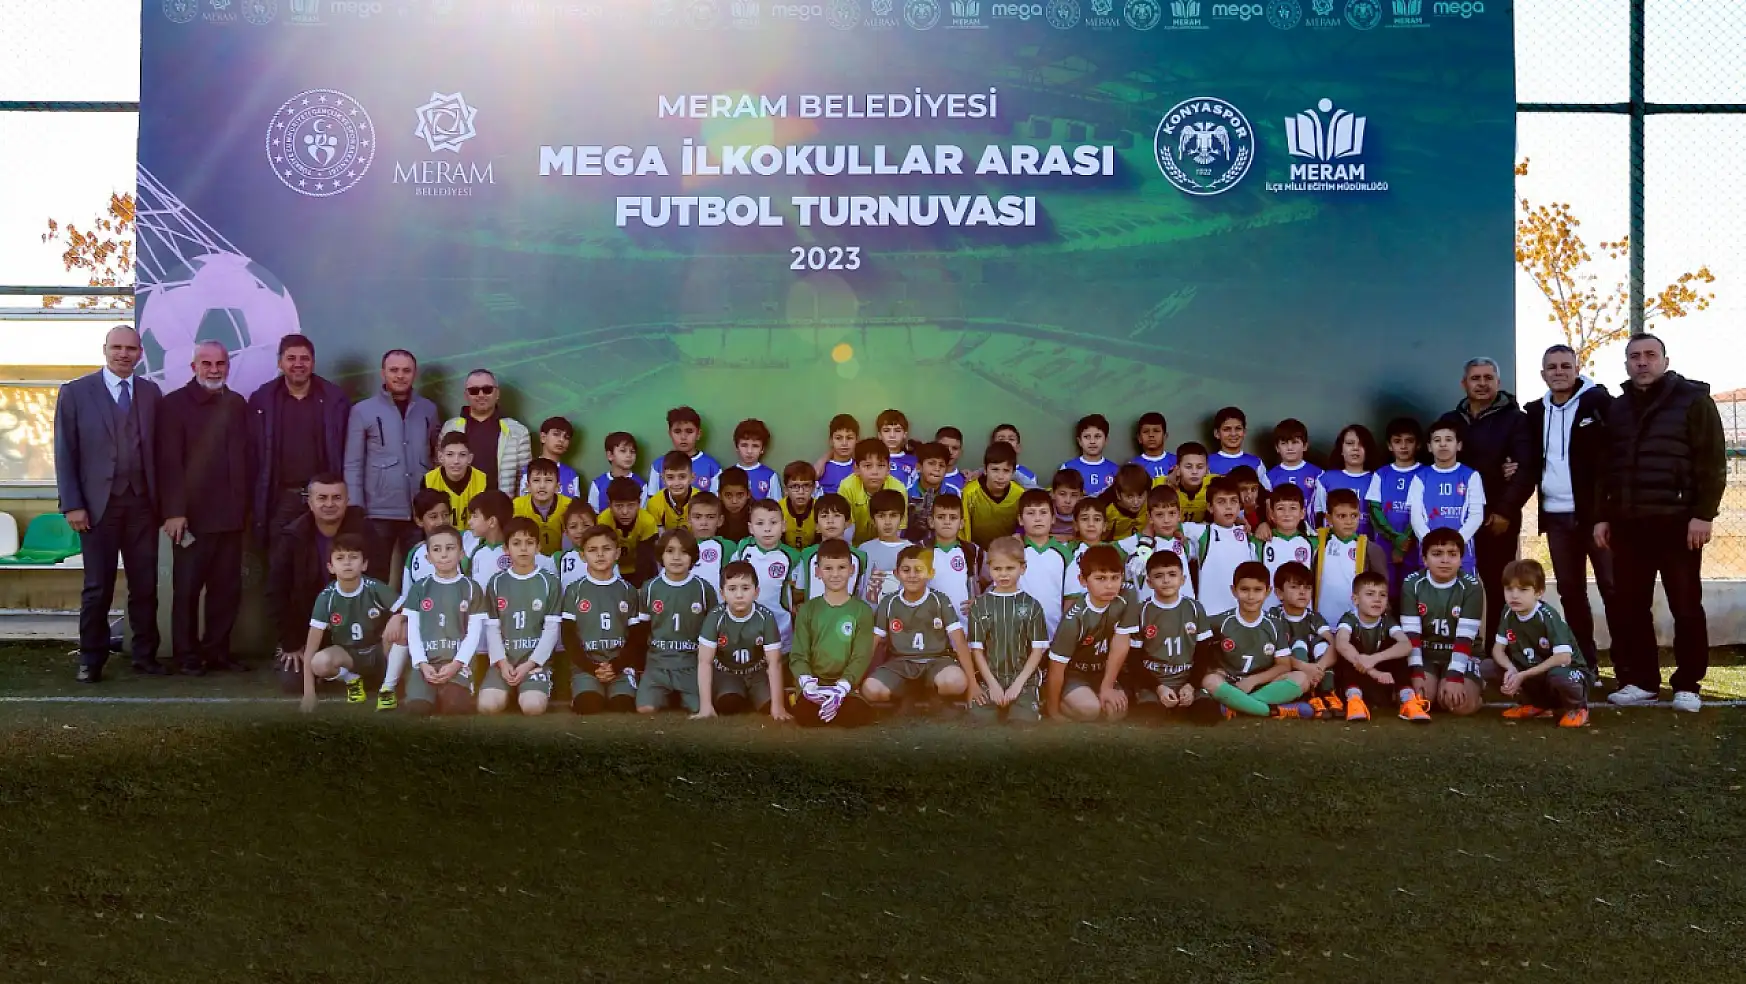 Meram'da İlkokullar Arası Futbol Turnuvası Başladı